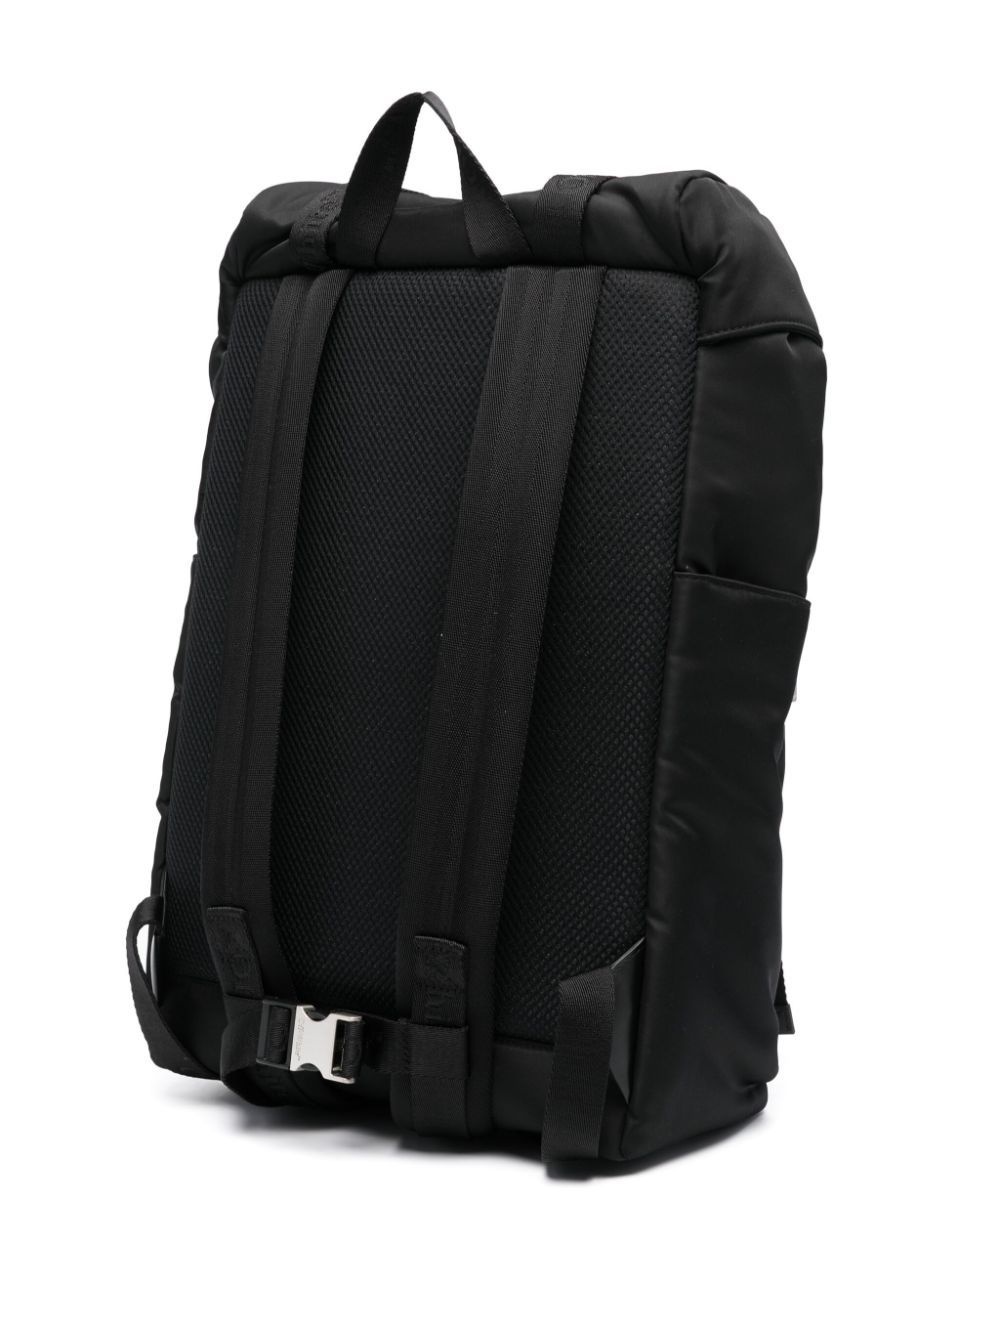 Nylon backpack - 2